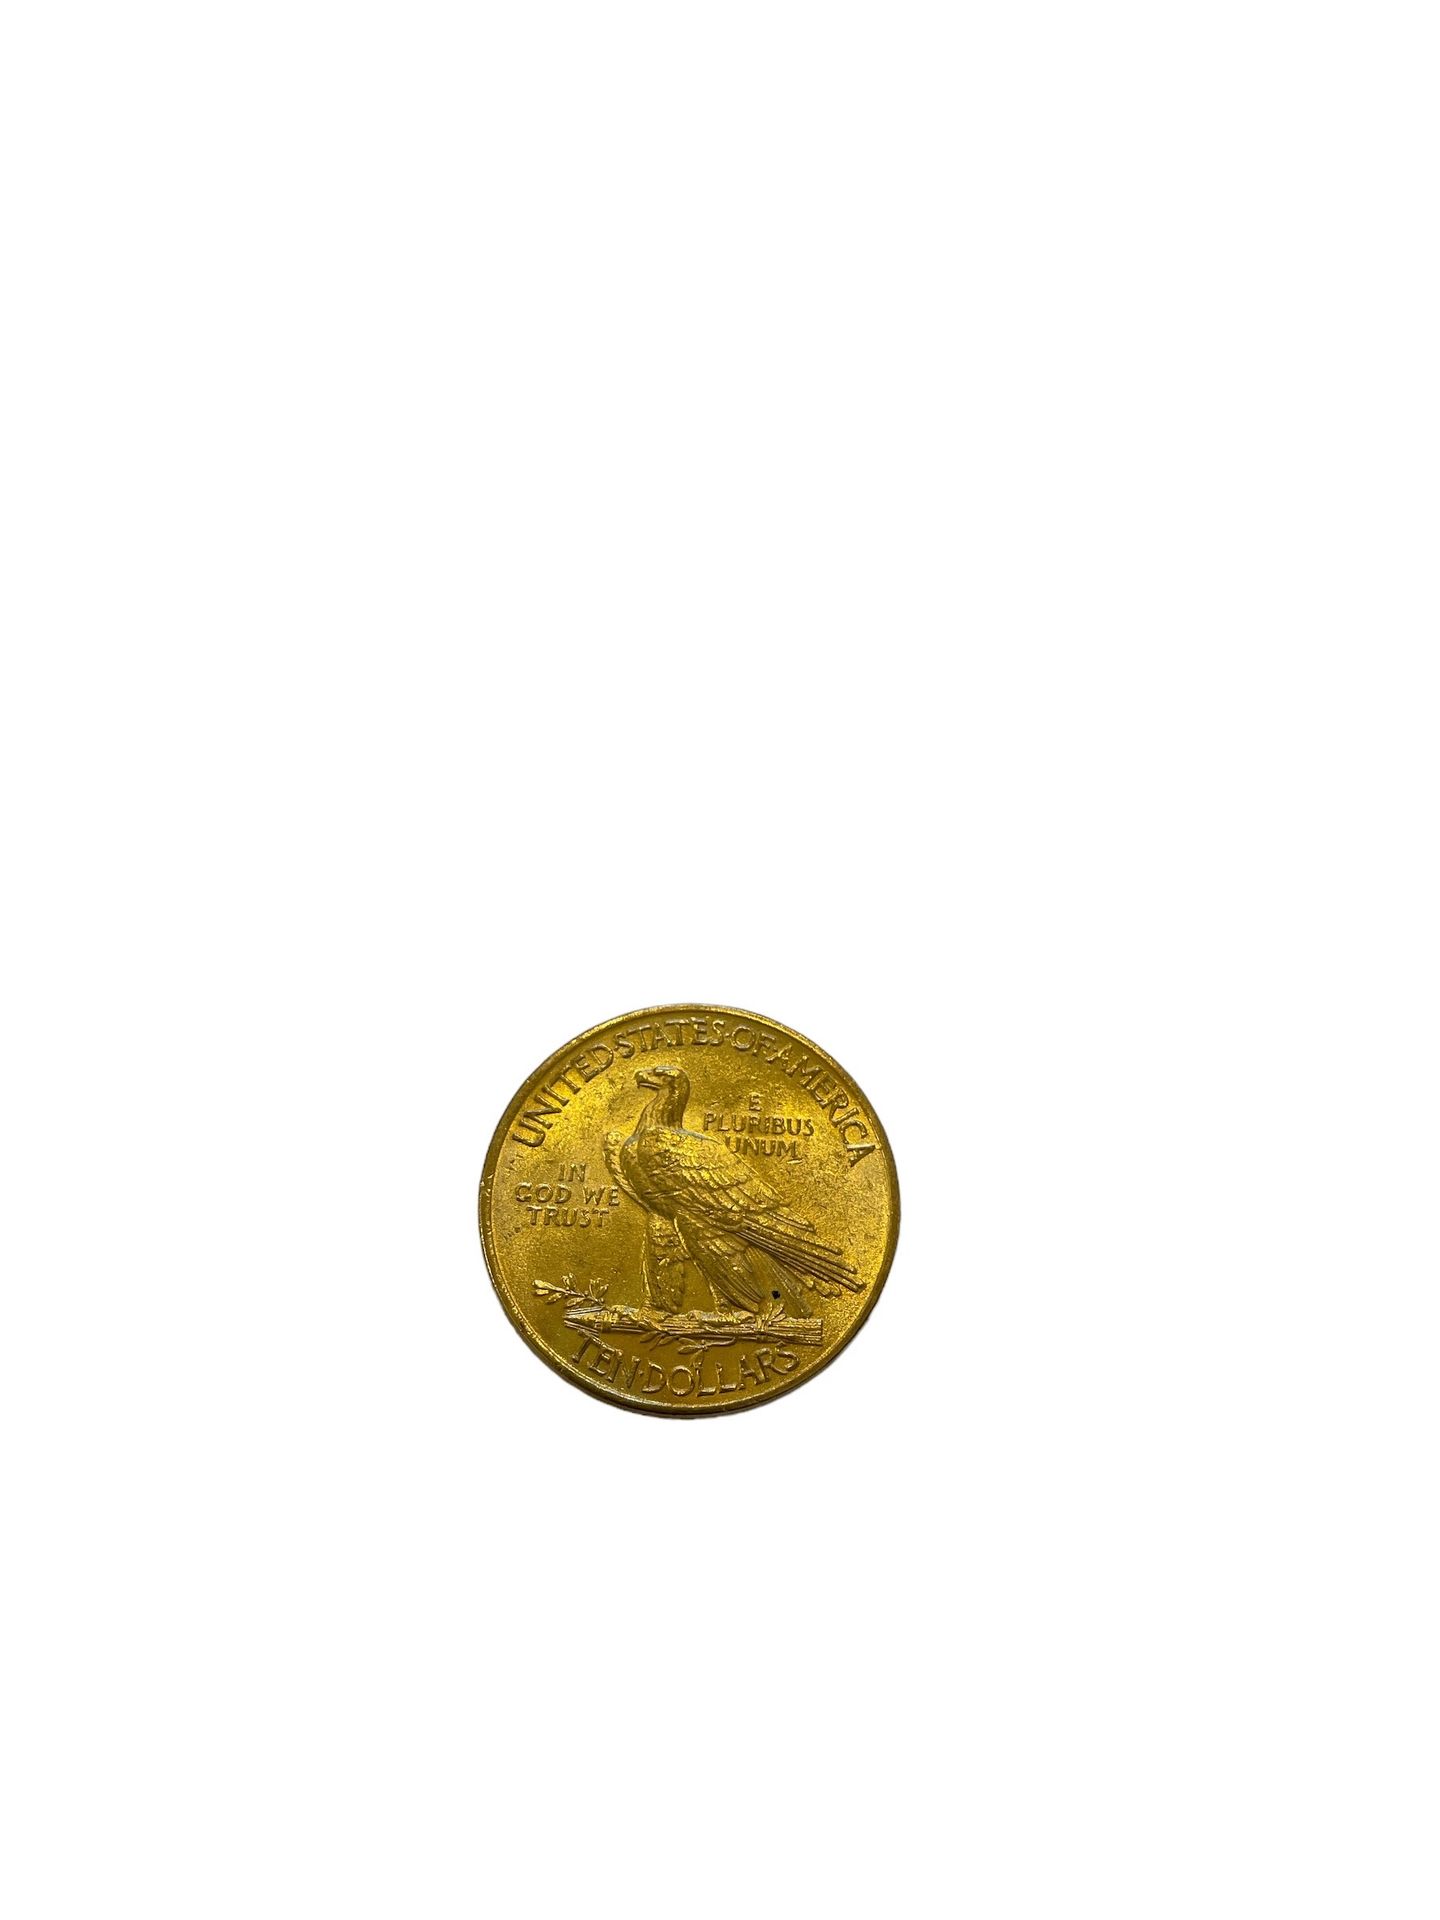 Null STATI UNITI
10 dollari oro
Peso: 16,7 g